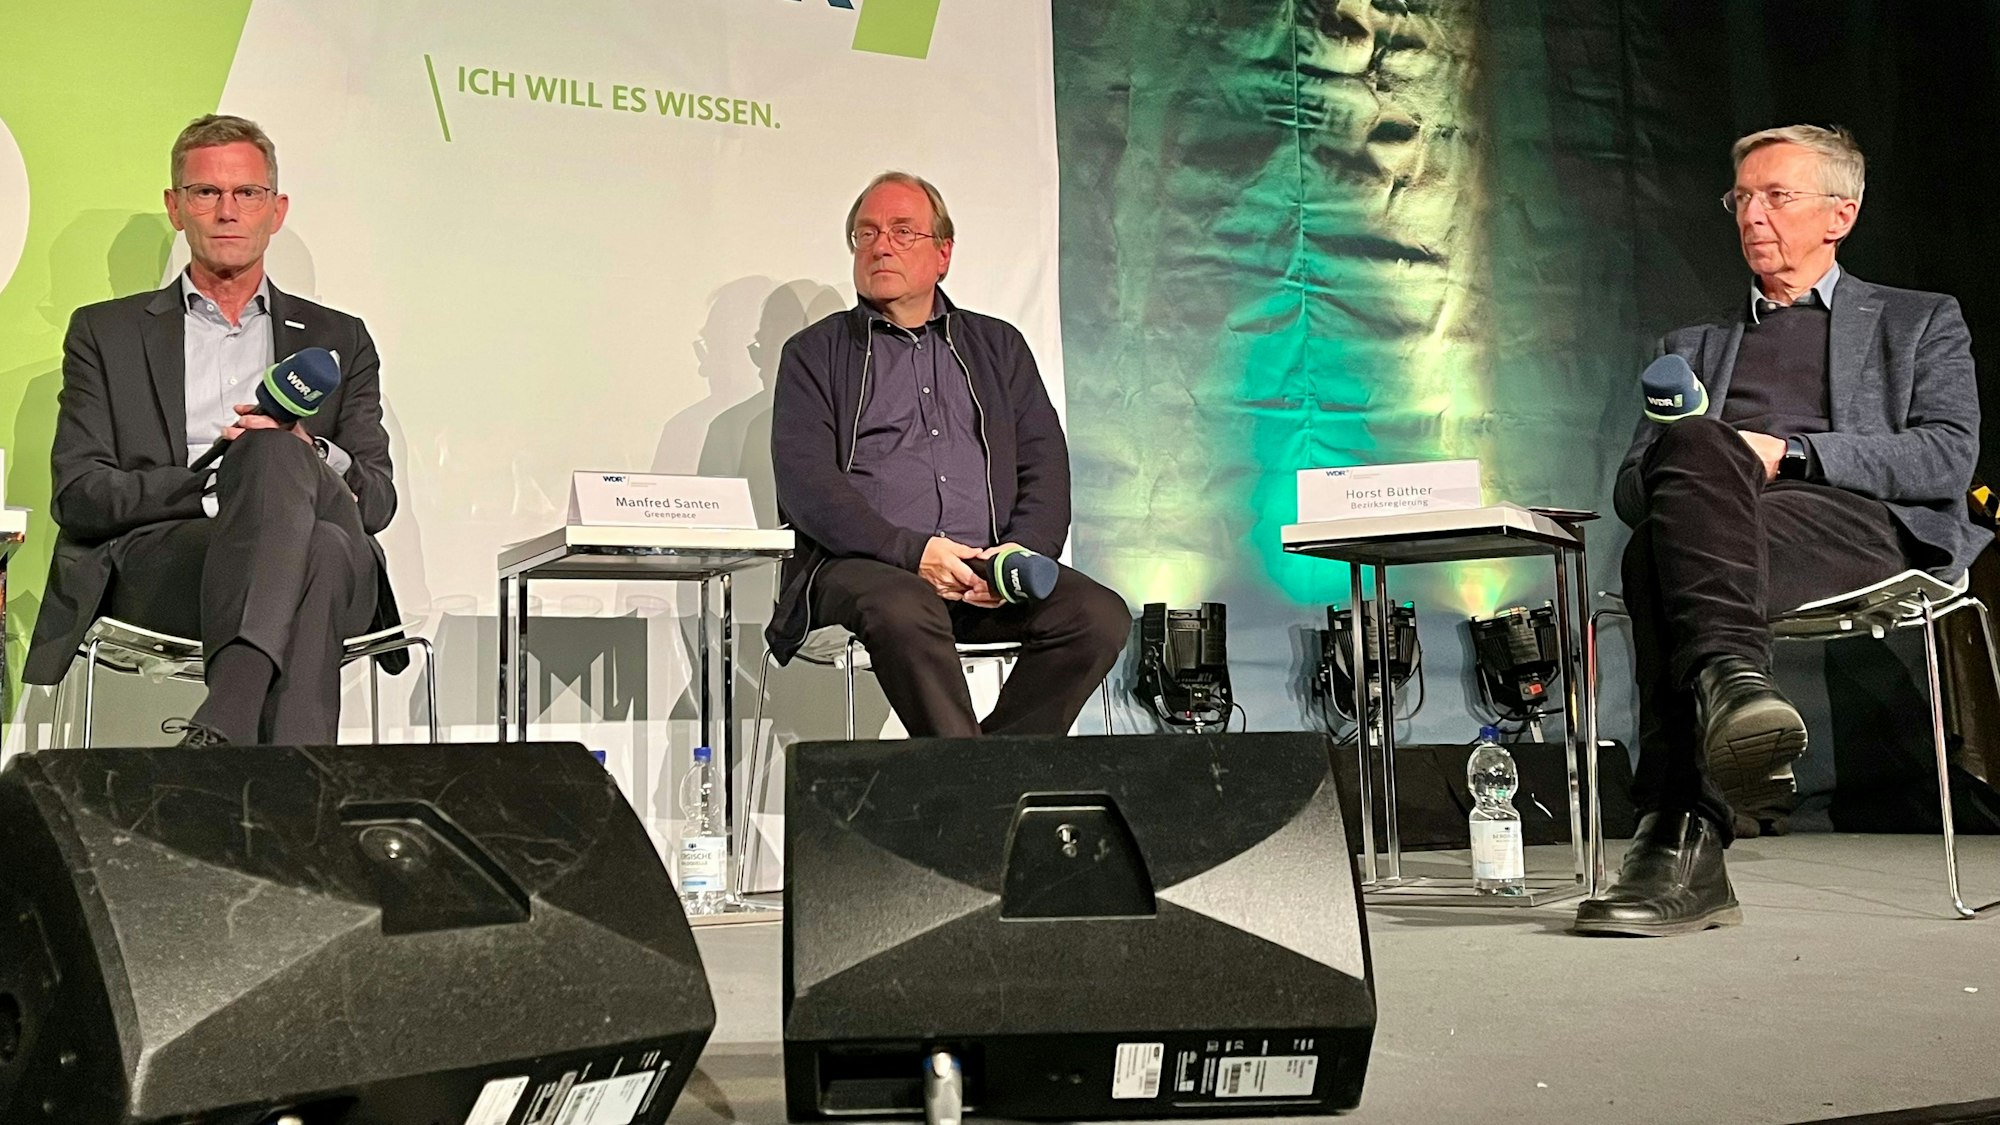 Hans Gennen, Technikchef von Currenta, Manfred Santen, Chemiker bei Greenpeace, und Horst Büther von der Bezirksregierung Köln sitzen auf einem Podium im Opladener Scala